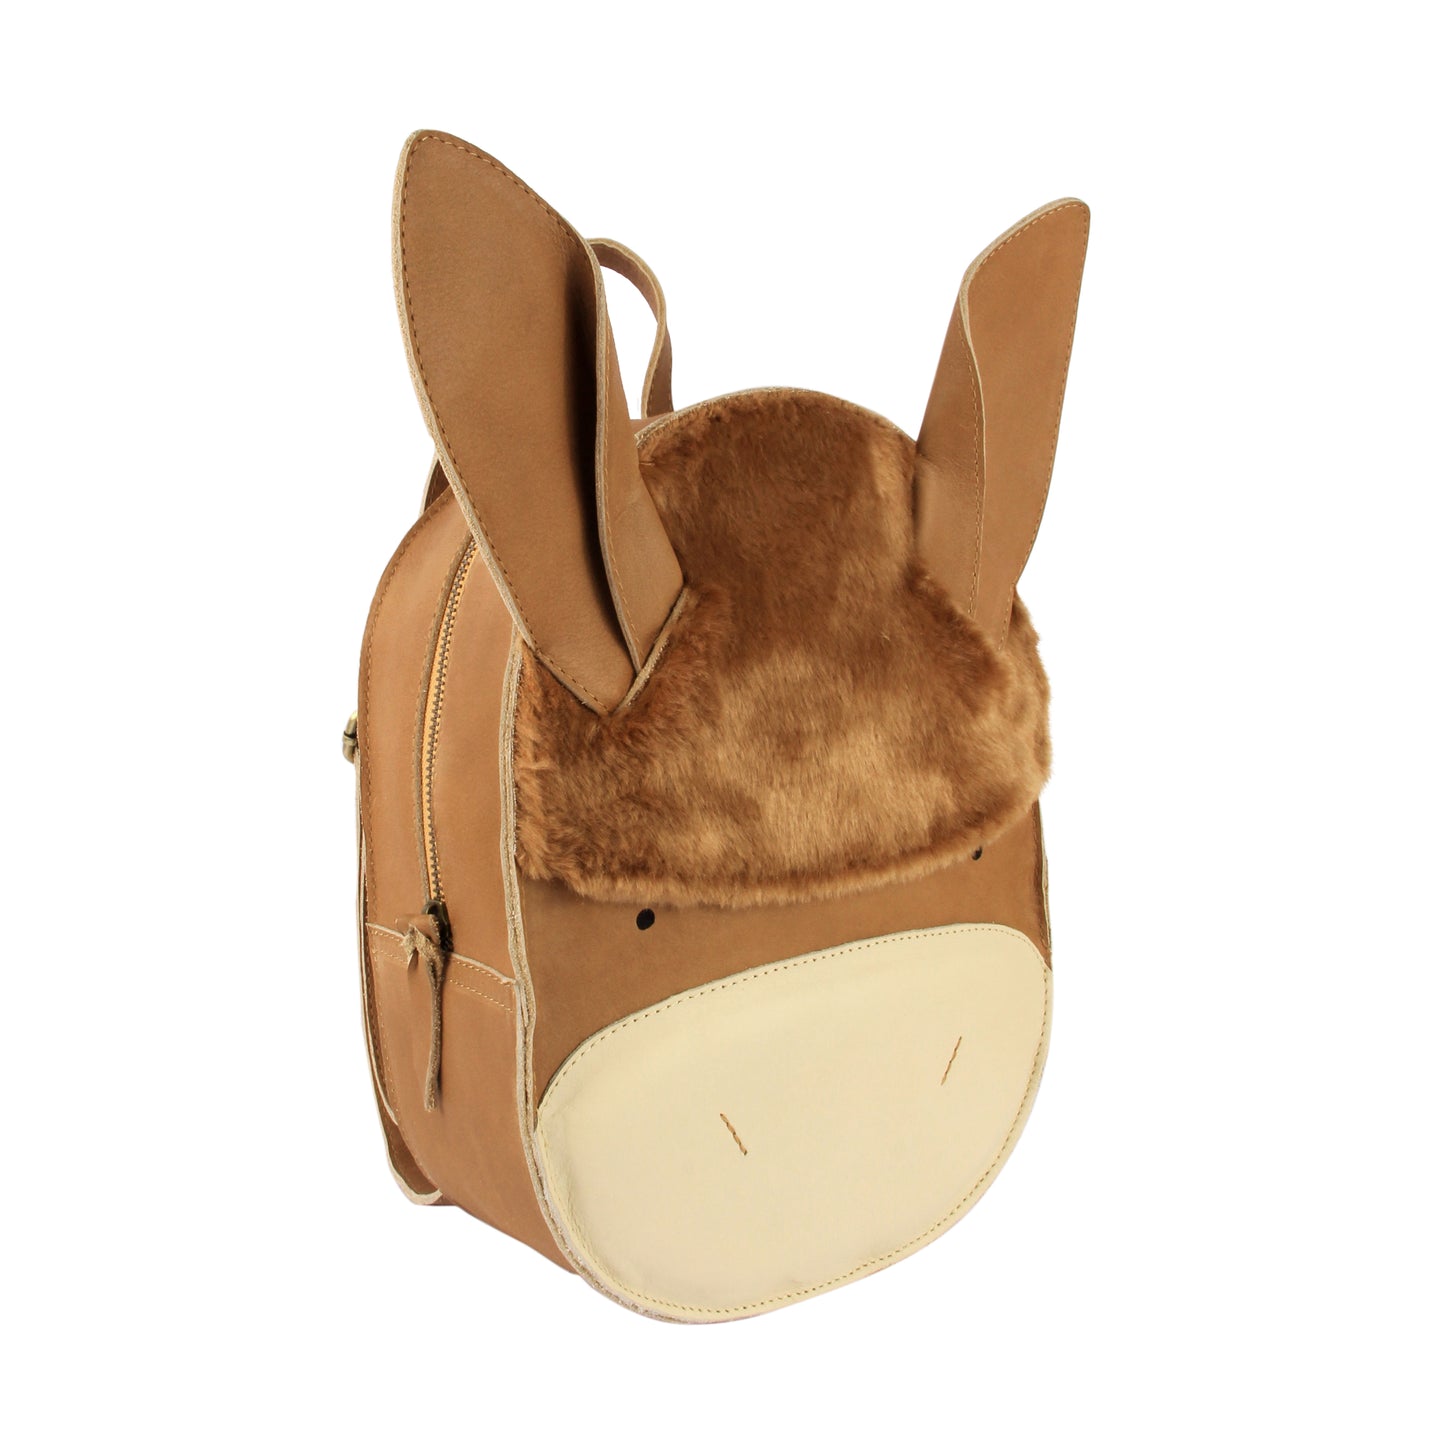 Umi Schoolbag Donkey